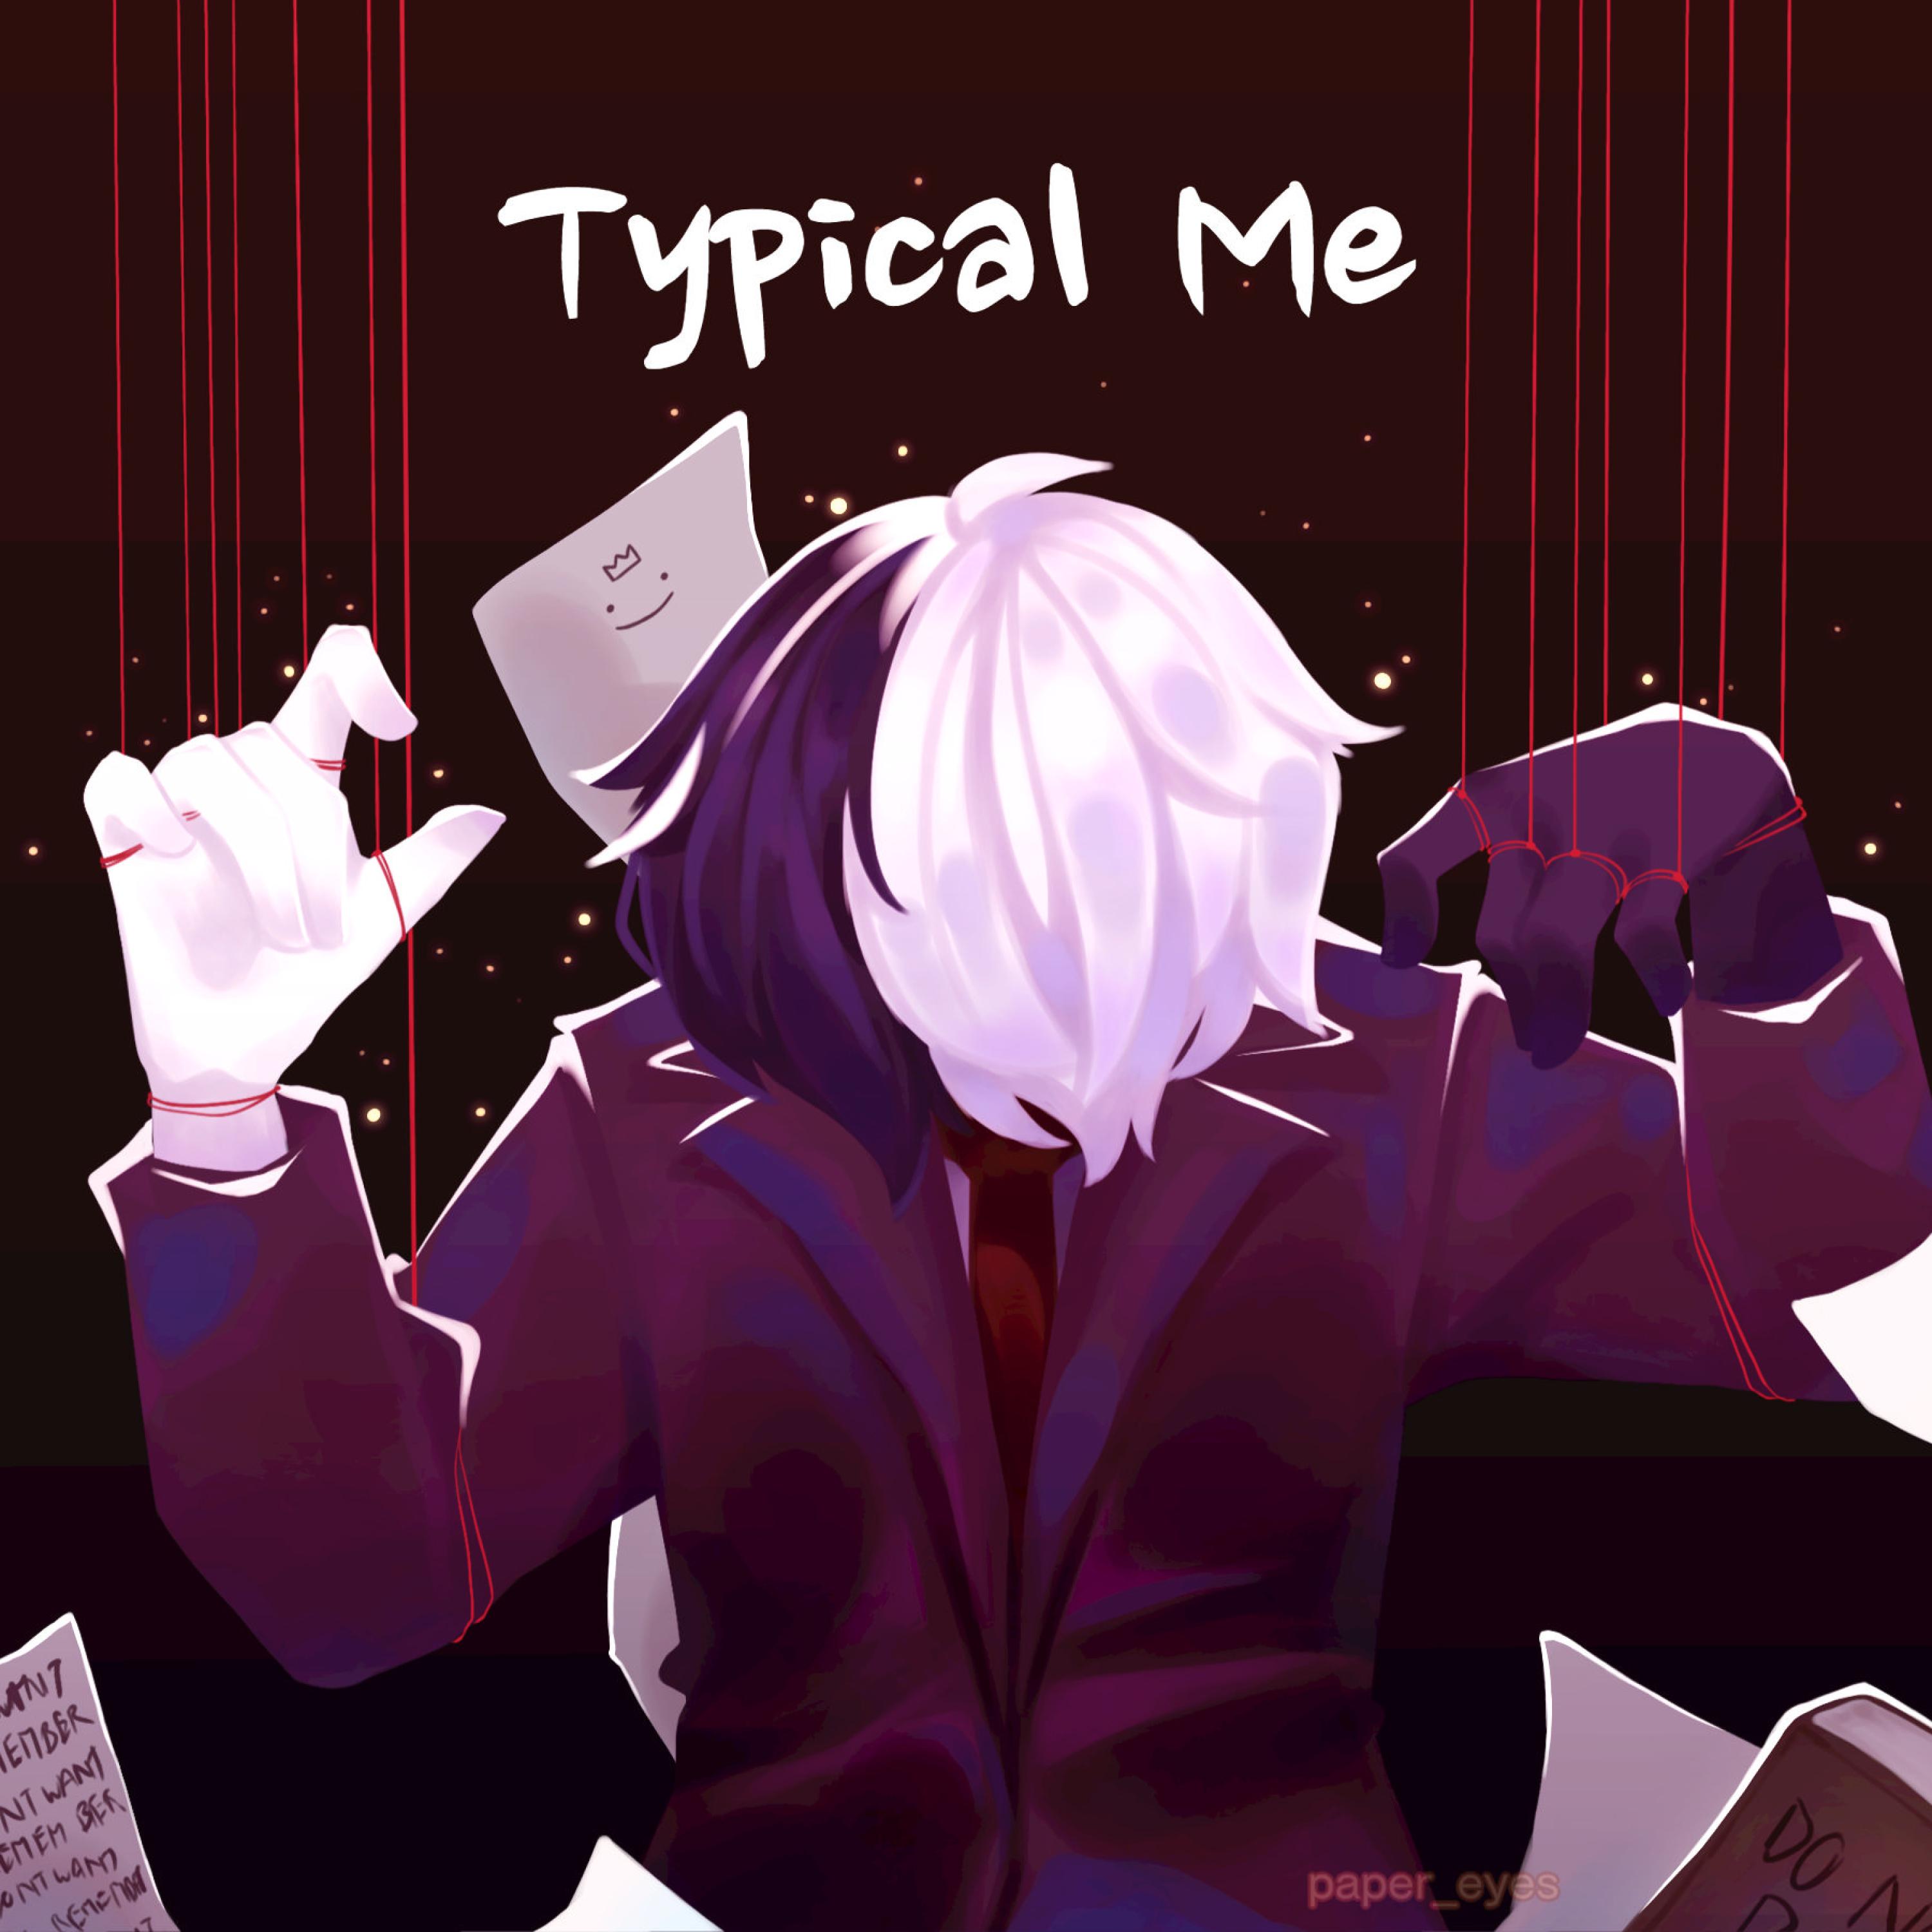 Typical Me歌词 歌手Kroh-专辑Typical Me-单曲《Typical Me》LRC歌词下载